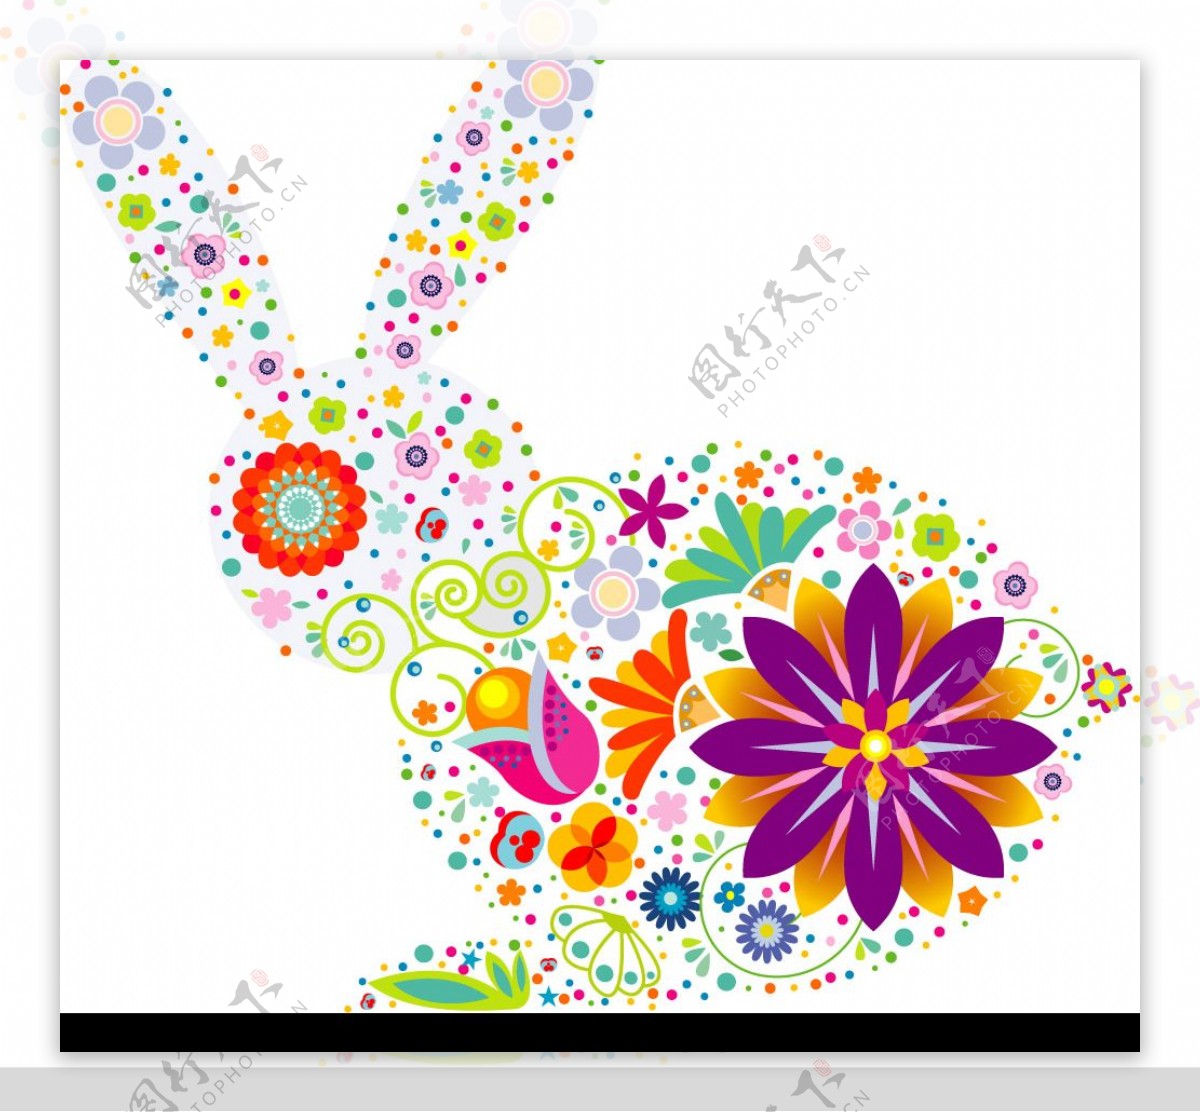 可爱花朵组成的兔子图案矢量素材图片